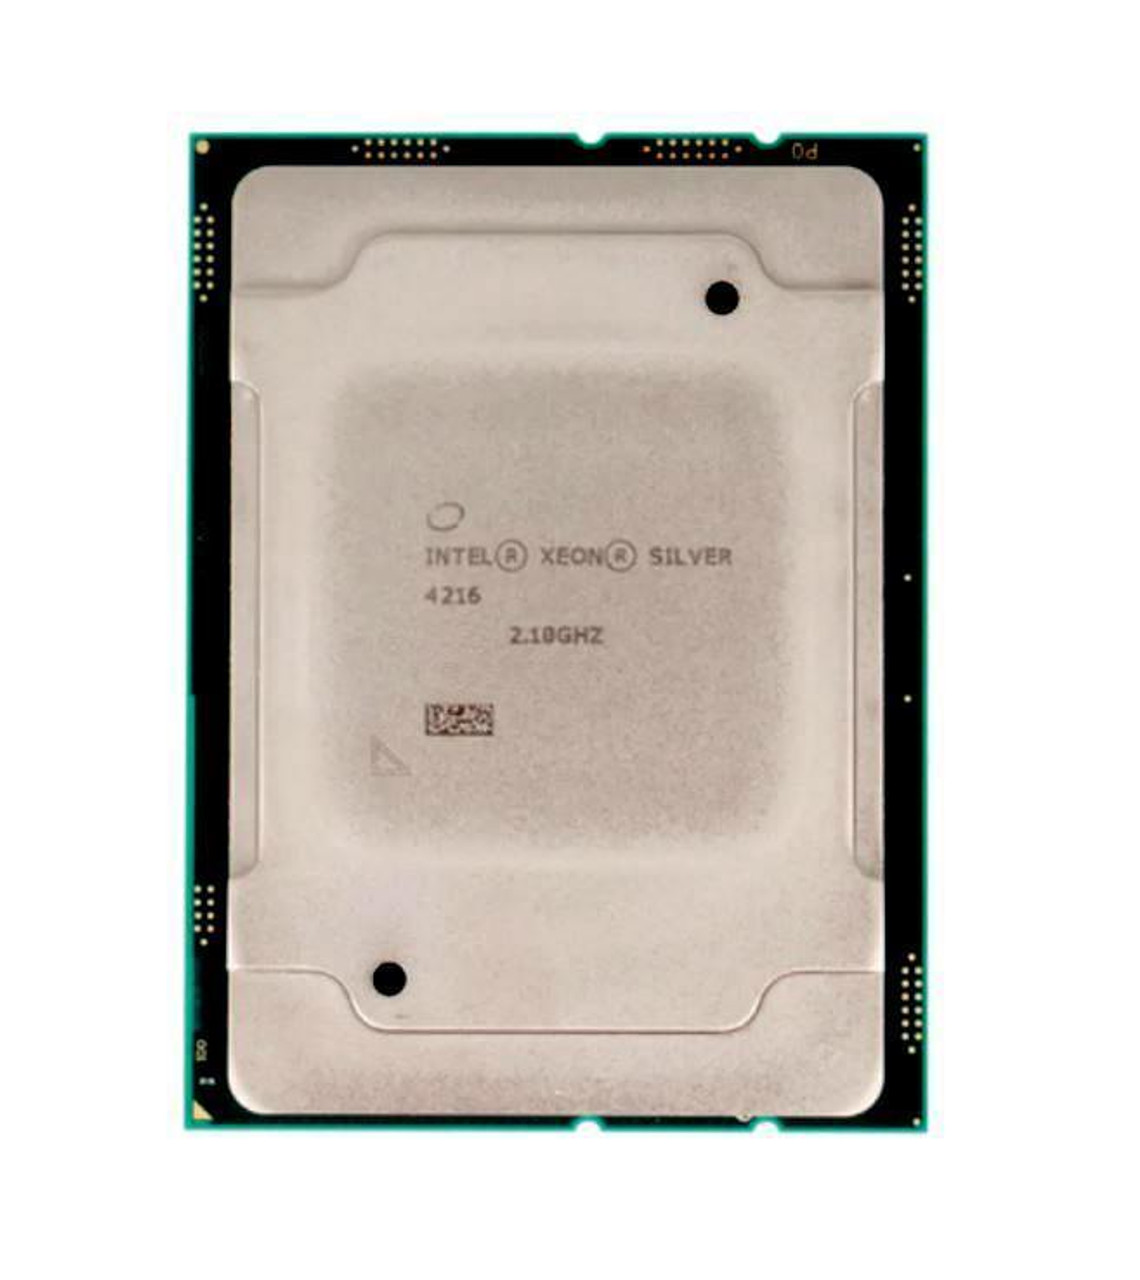 Fujitsu 2.10GHz 22MB Cache Socket FCLGA3647 Intel Xeon Silver 4216 16-Core Processor Upgrade